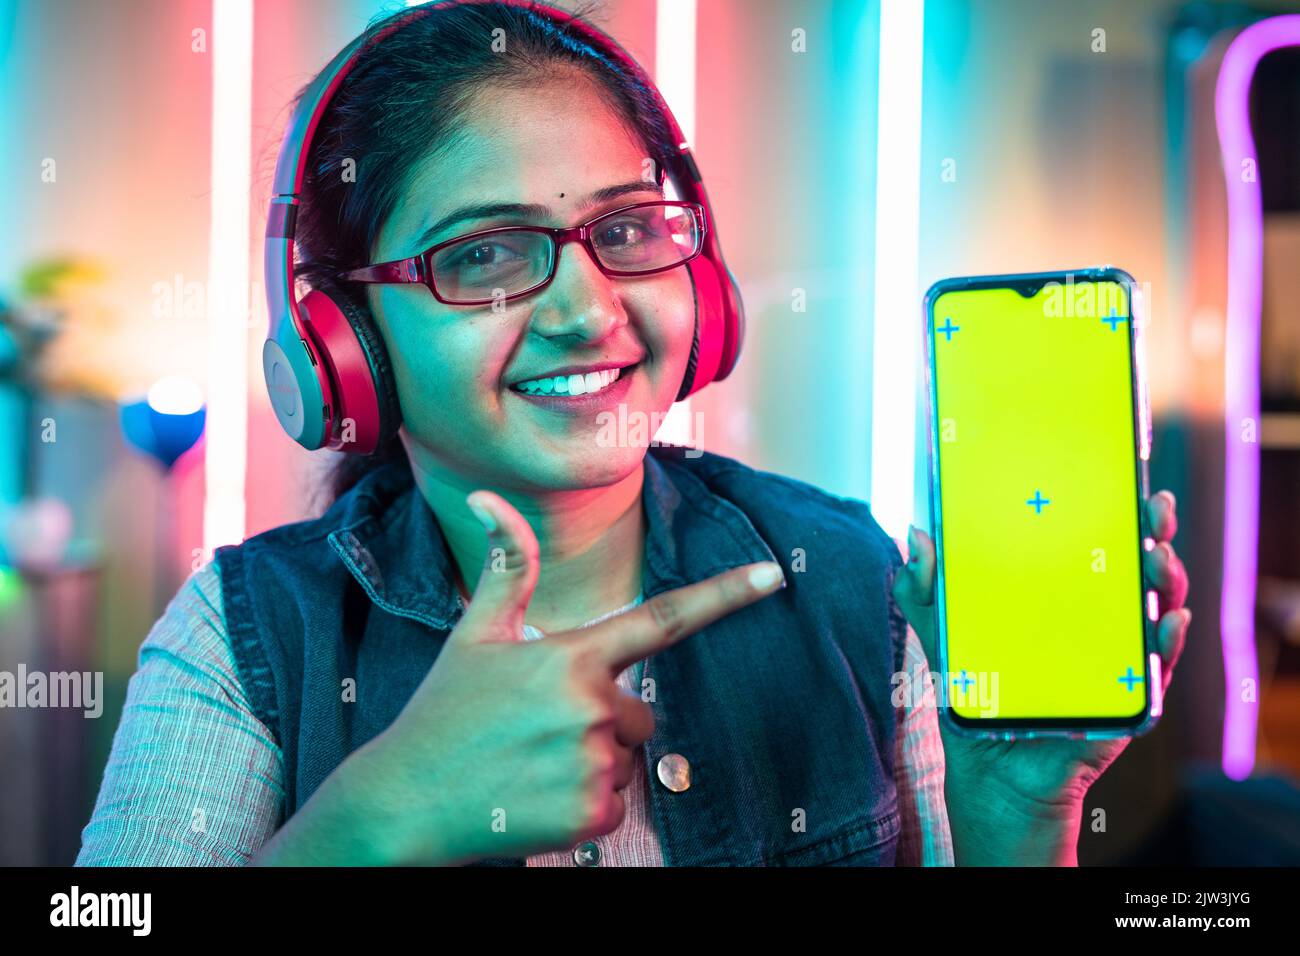 Lächelnde Frau mit schnurlosem Headset, das ein Mobiltelefon mit grünem Bildschirm zeigt, indem sie mit dem Finger zeigt, während sie die Kamera zu Hause betrachtet – Spielkonzept Stockfoto